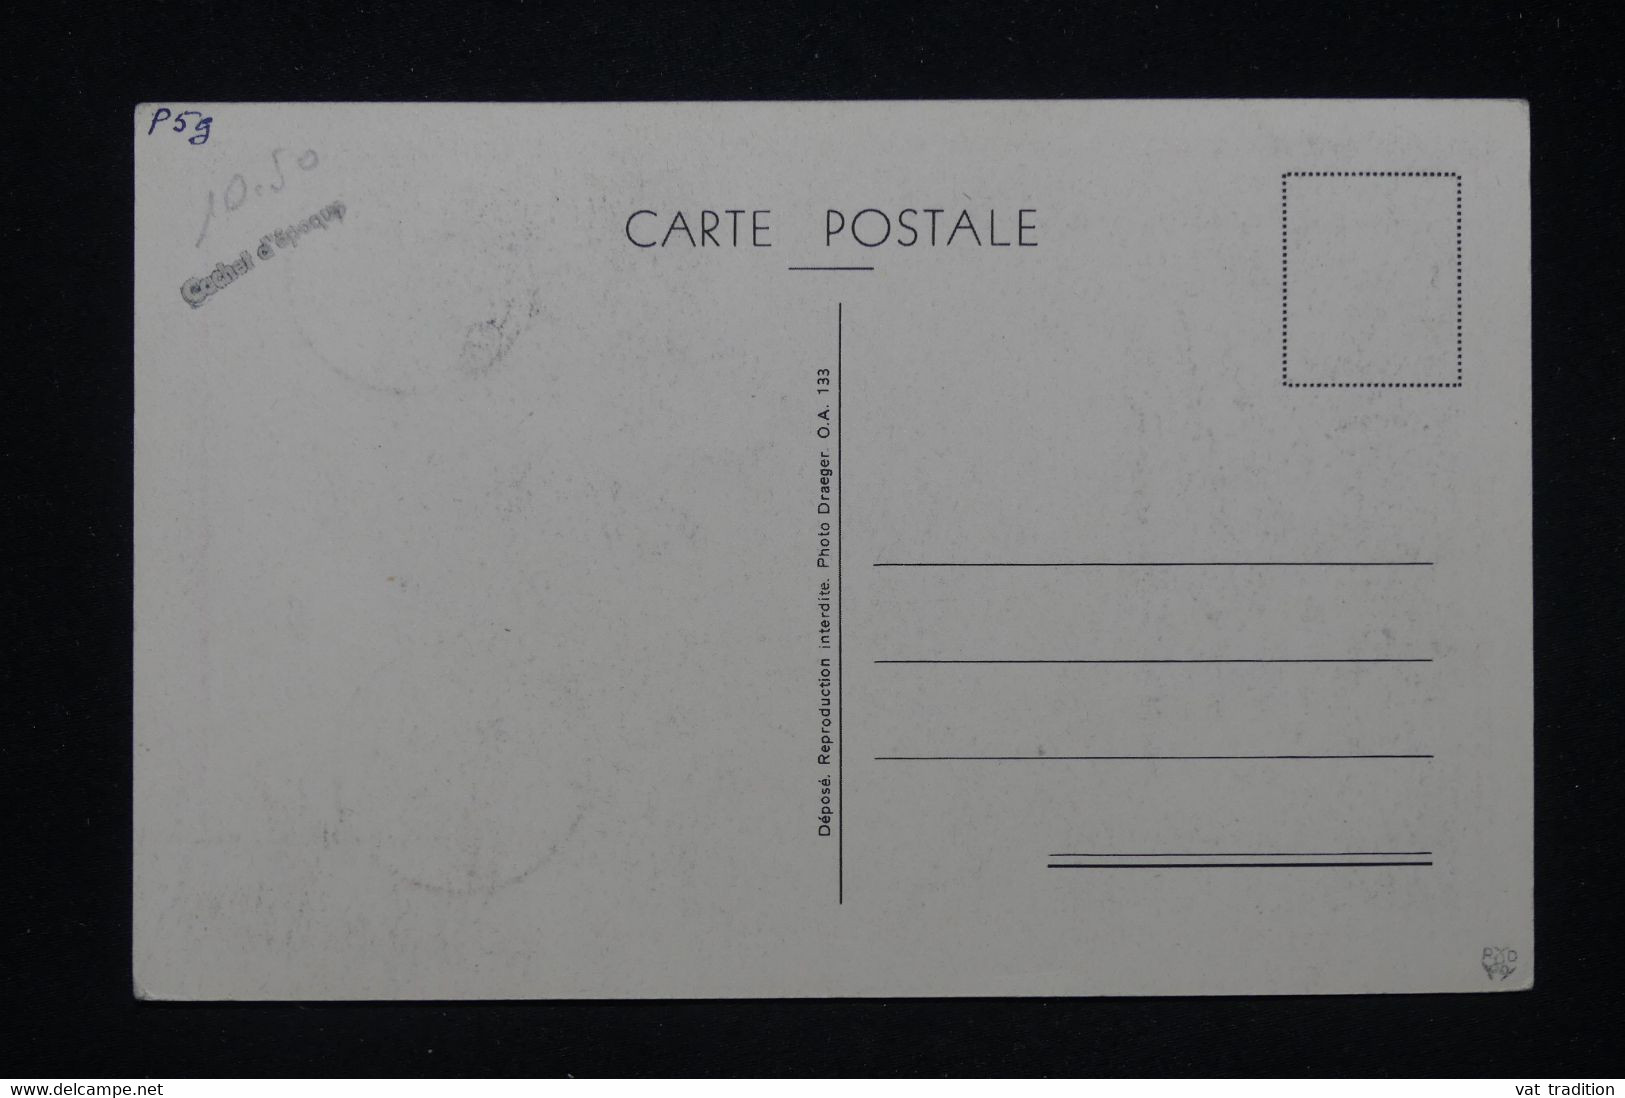 Carte de voeux avec enveloppe - lot de 40 cartes Bonne année – Draeger Paris